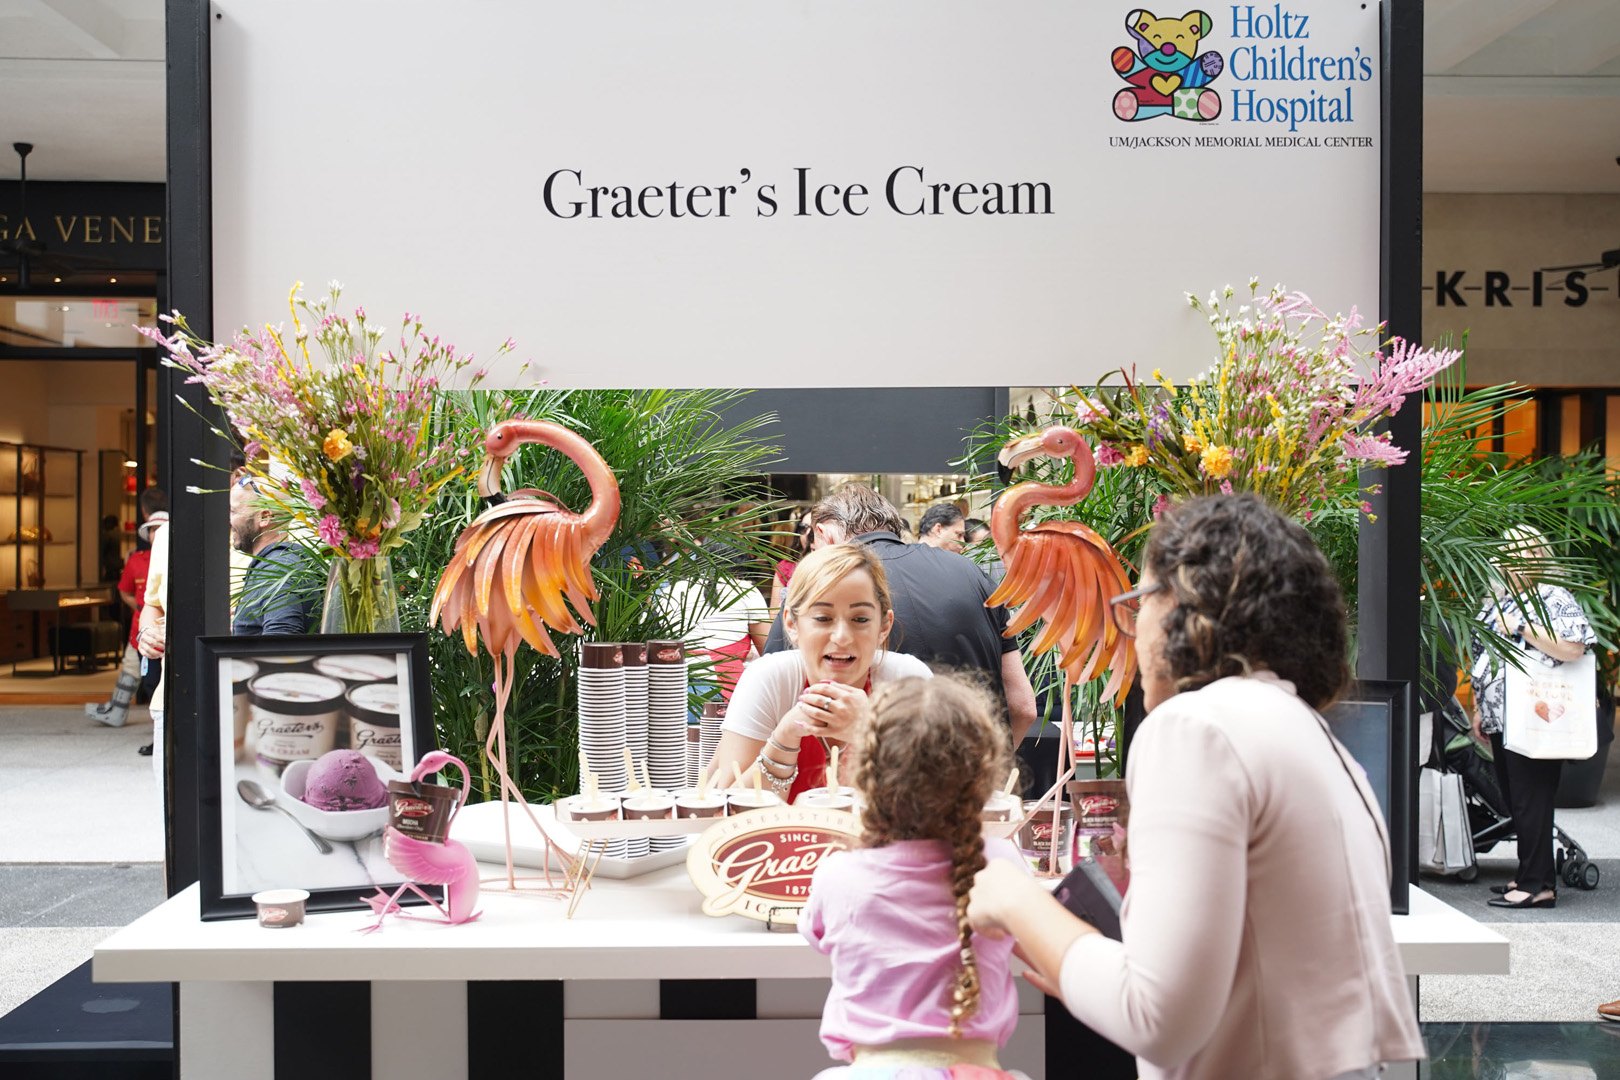 Graeter's ice cream booth